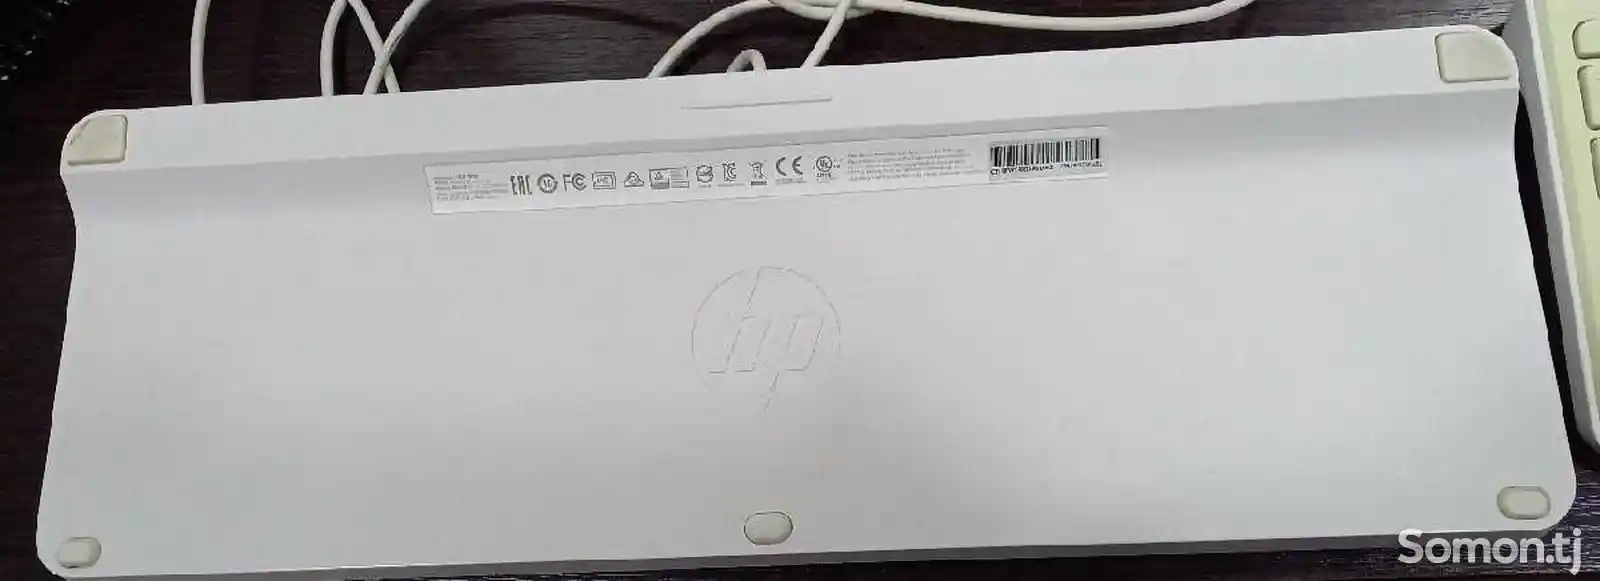 Клавиатура HP-3